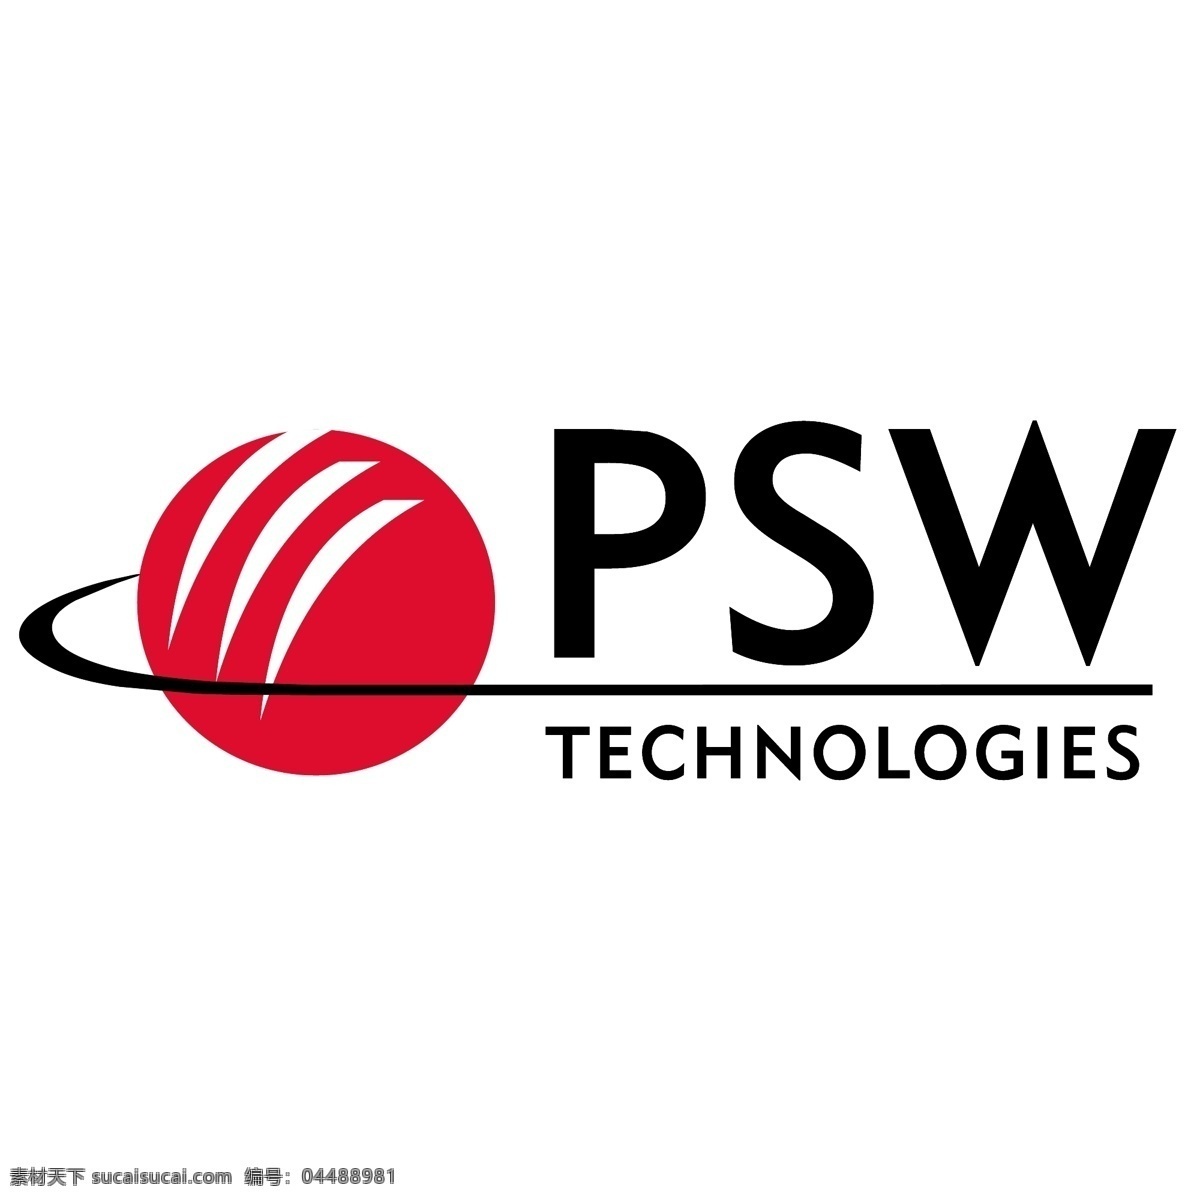 密码 技术 免费 psw 标识 psd源文件 logo设计